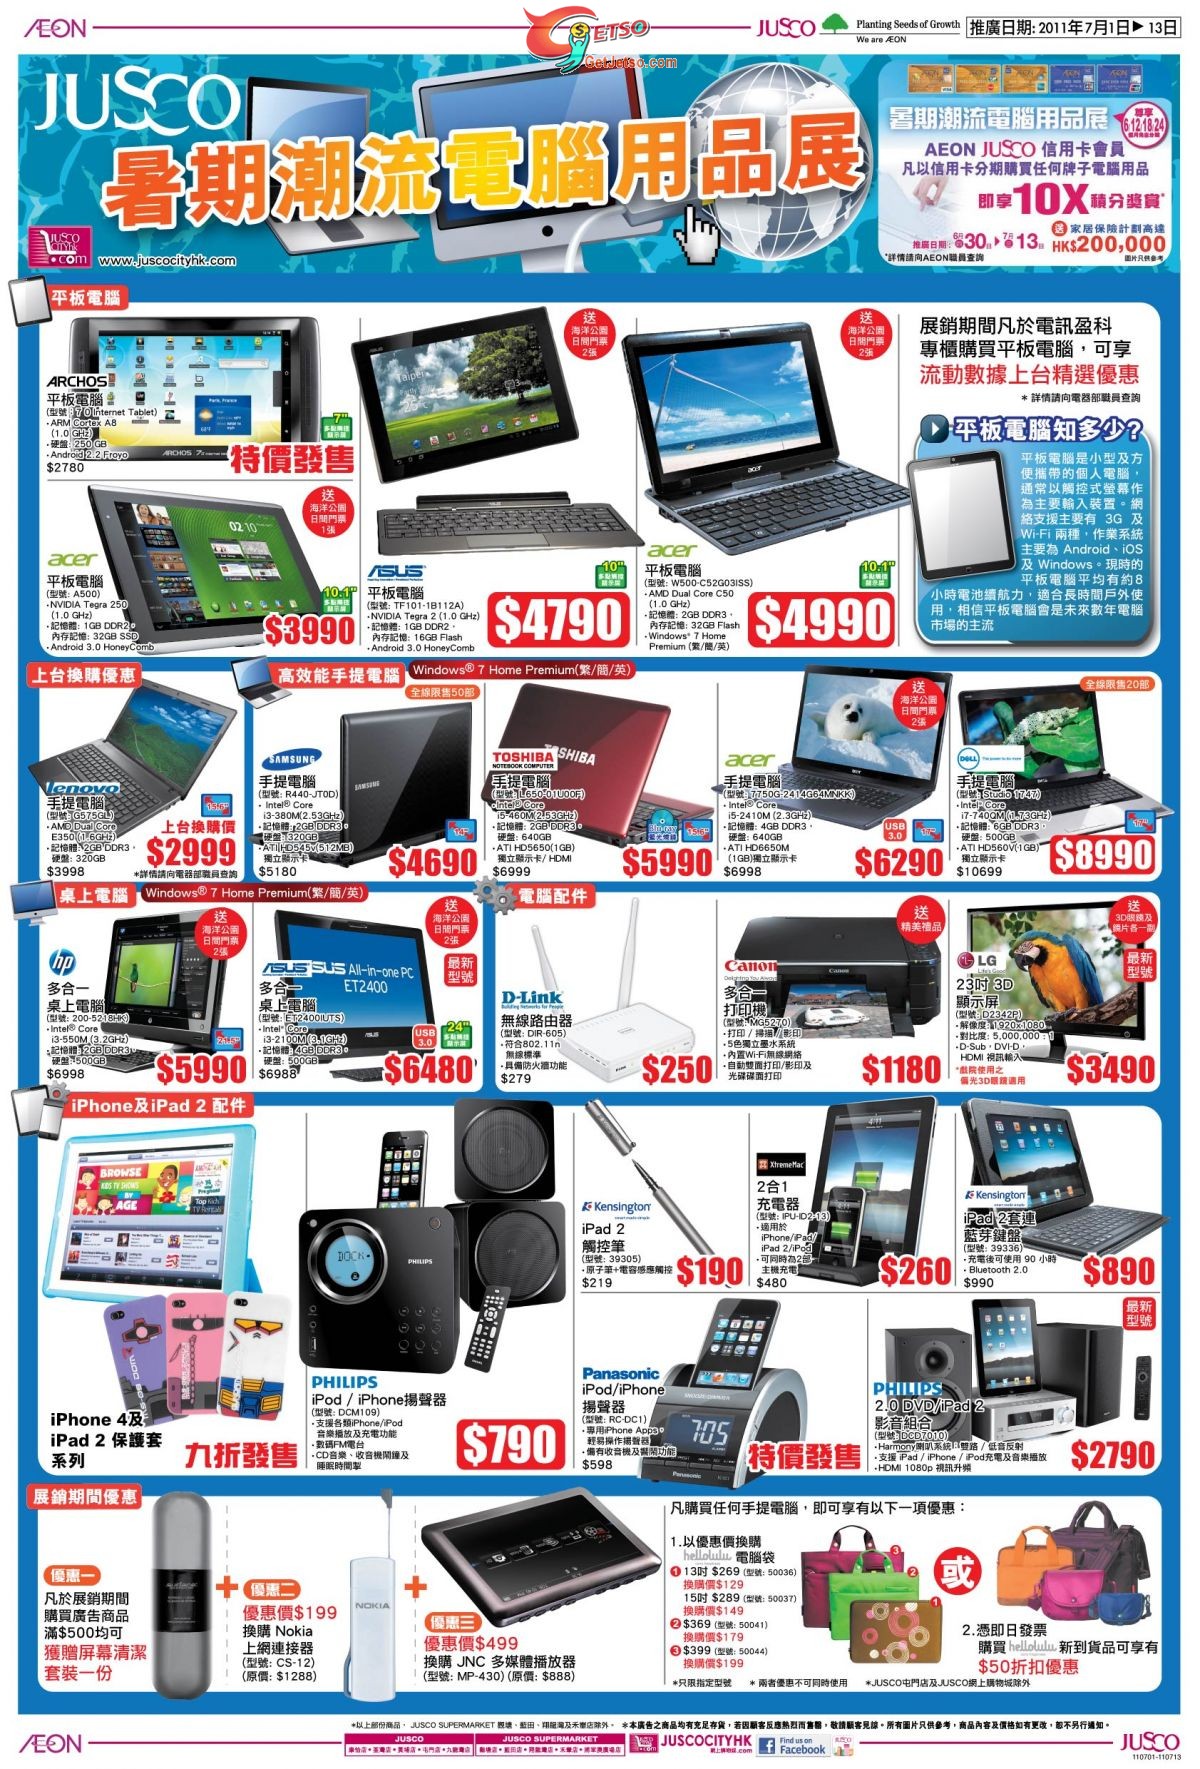 吉之島暑假電腦用品展及家電組合超特賣優惠(11年7月1-13日)圖片2